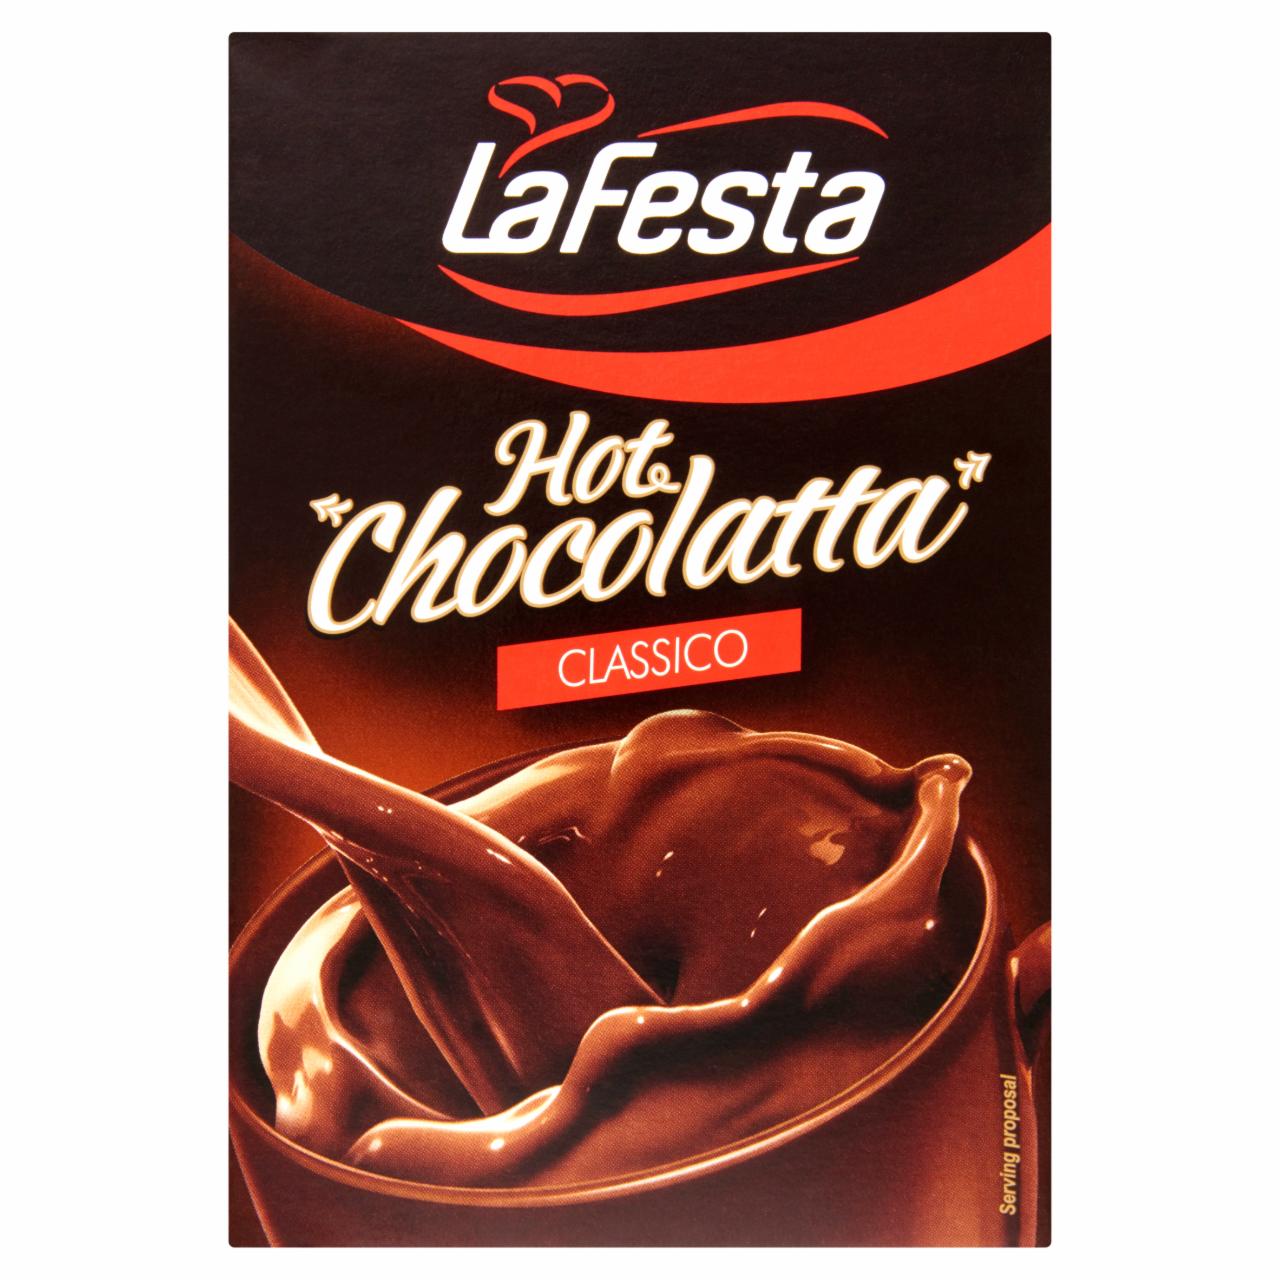 Képek - La Festa Hot Chocolatta Classico csokoládé ízű instant kakaó italpor 10 x 25 g